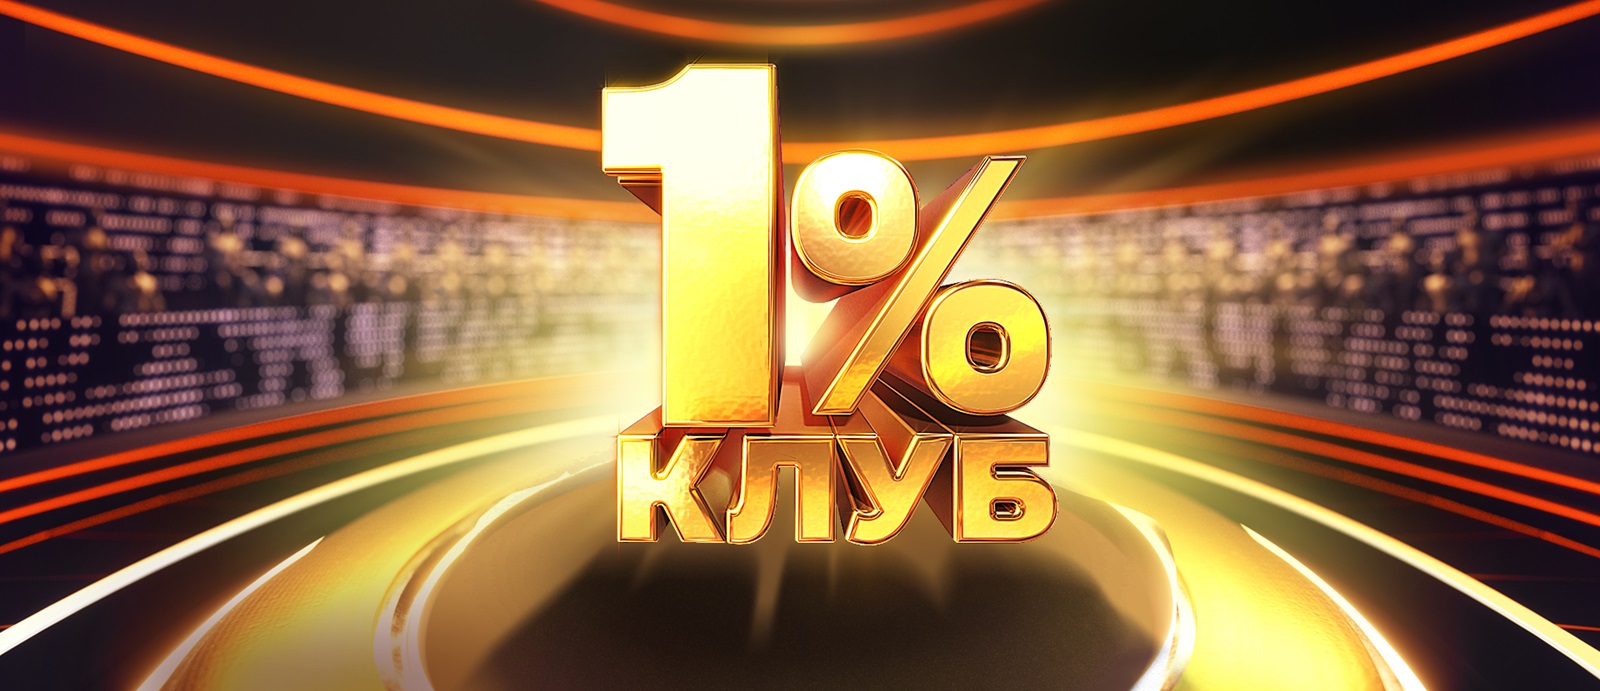 Клуб 1% - новый проект "1+1 Украина". Новости и подробности проекта Клуб 1%